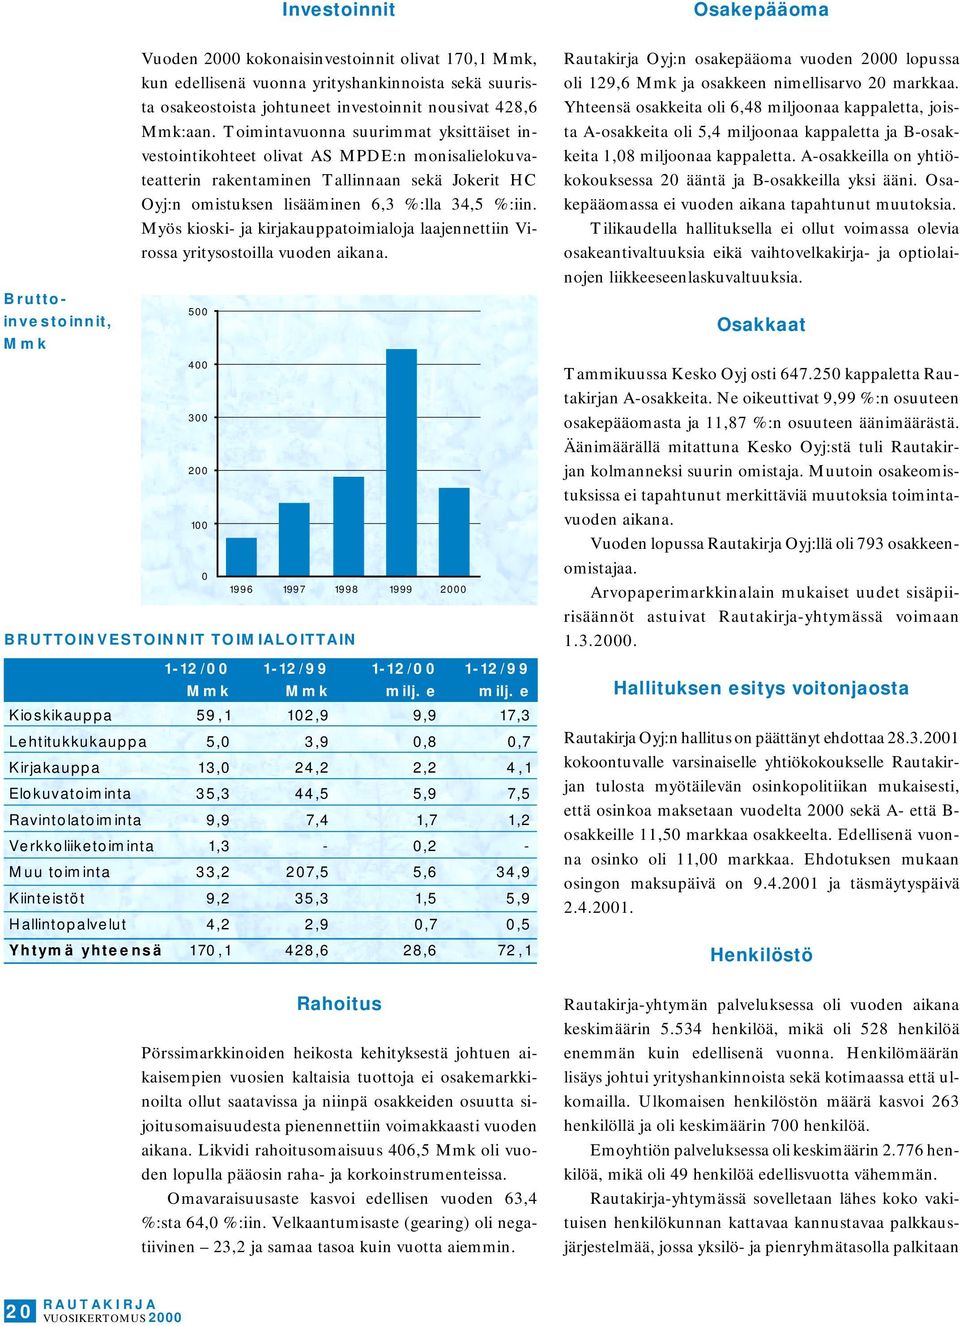 Toimintavuonna suurimmat yksittäiset investointikohteet olivat AS MPDE:n monisalielokuvateatterin rakentaminen Tallinnaan sekä Jokerit HC Oyj:n omistuksen lisääminen 6,3 %:lla 34,5 %:iin.